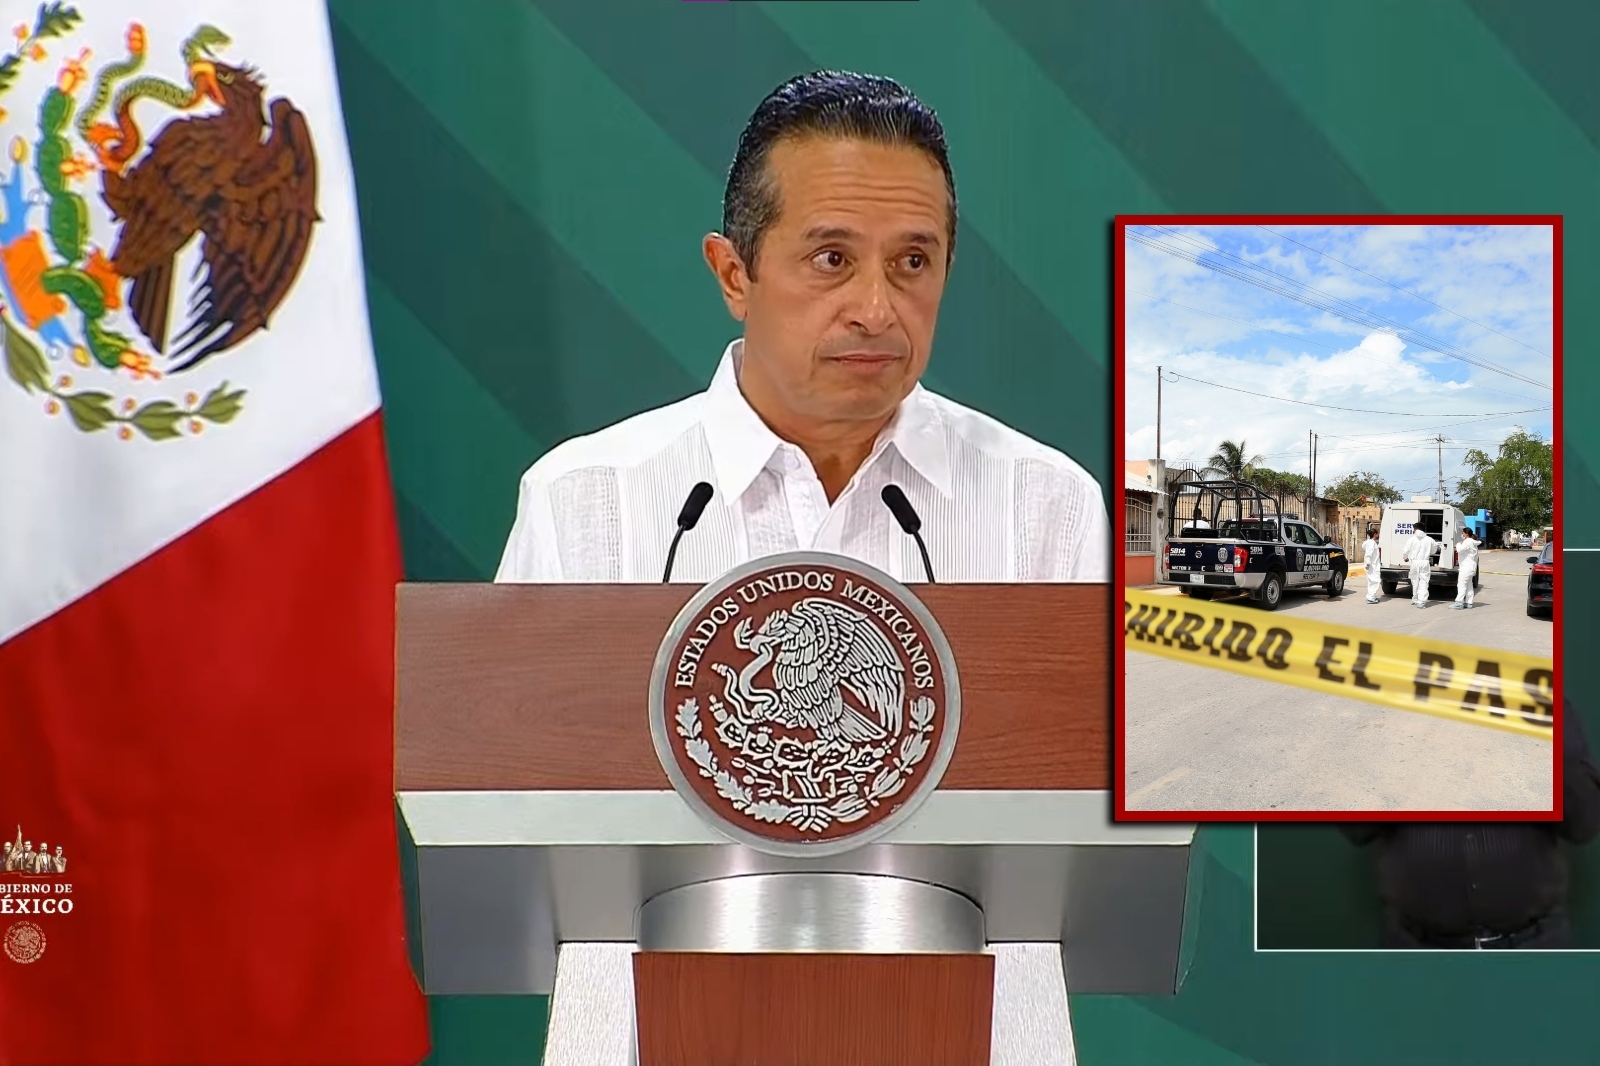 El Gobernador de Quintana Roo se evocó a dar información de su mandato, y no dio datos sobre la creciente violencia en el Estado